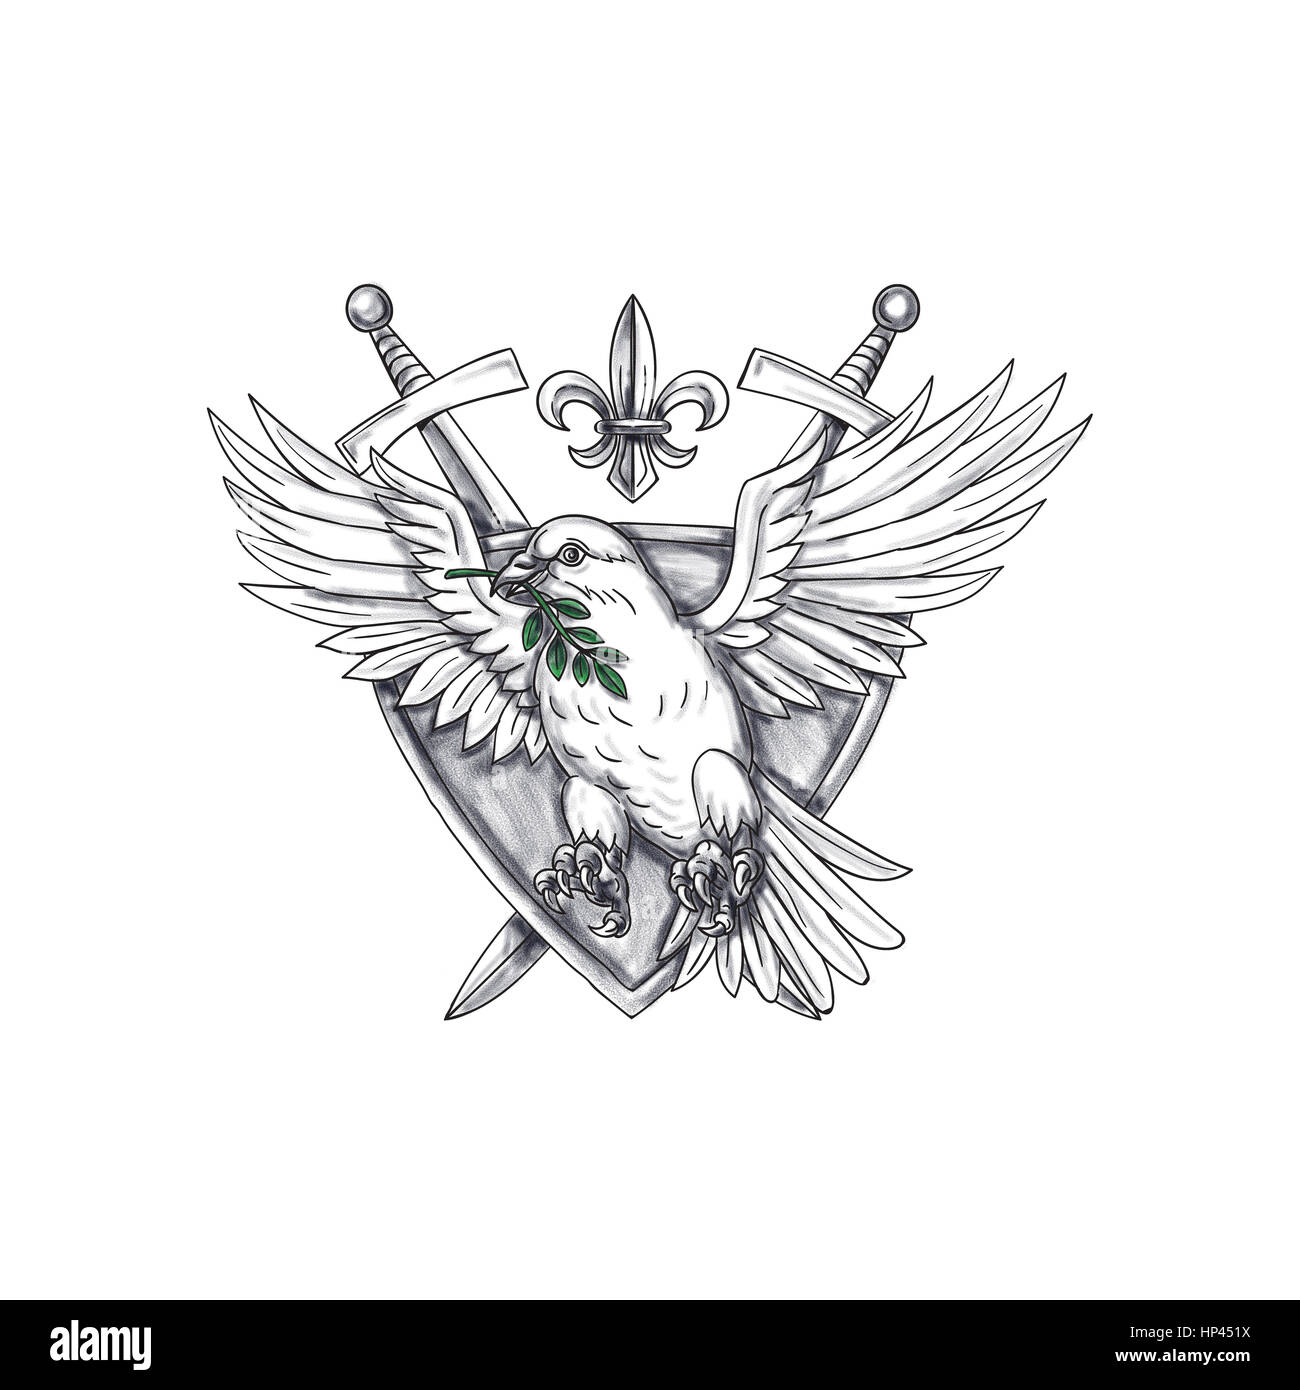 Illustration style de tatouage d'une colombe avec la feuille d'olivier dans son bec situé à l''intérieur de la crête du bouclier à l'épée et fleur de lis dans l'arrière-plan. Banque D'Images